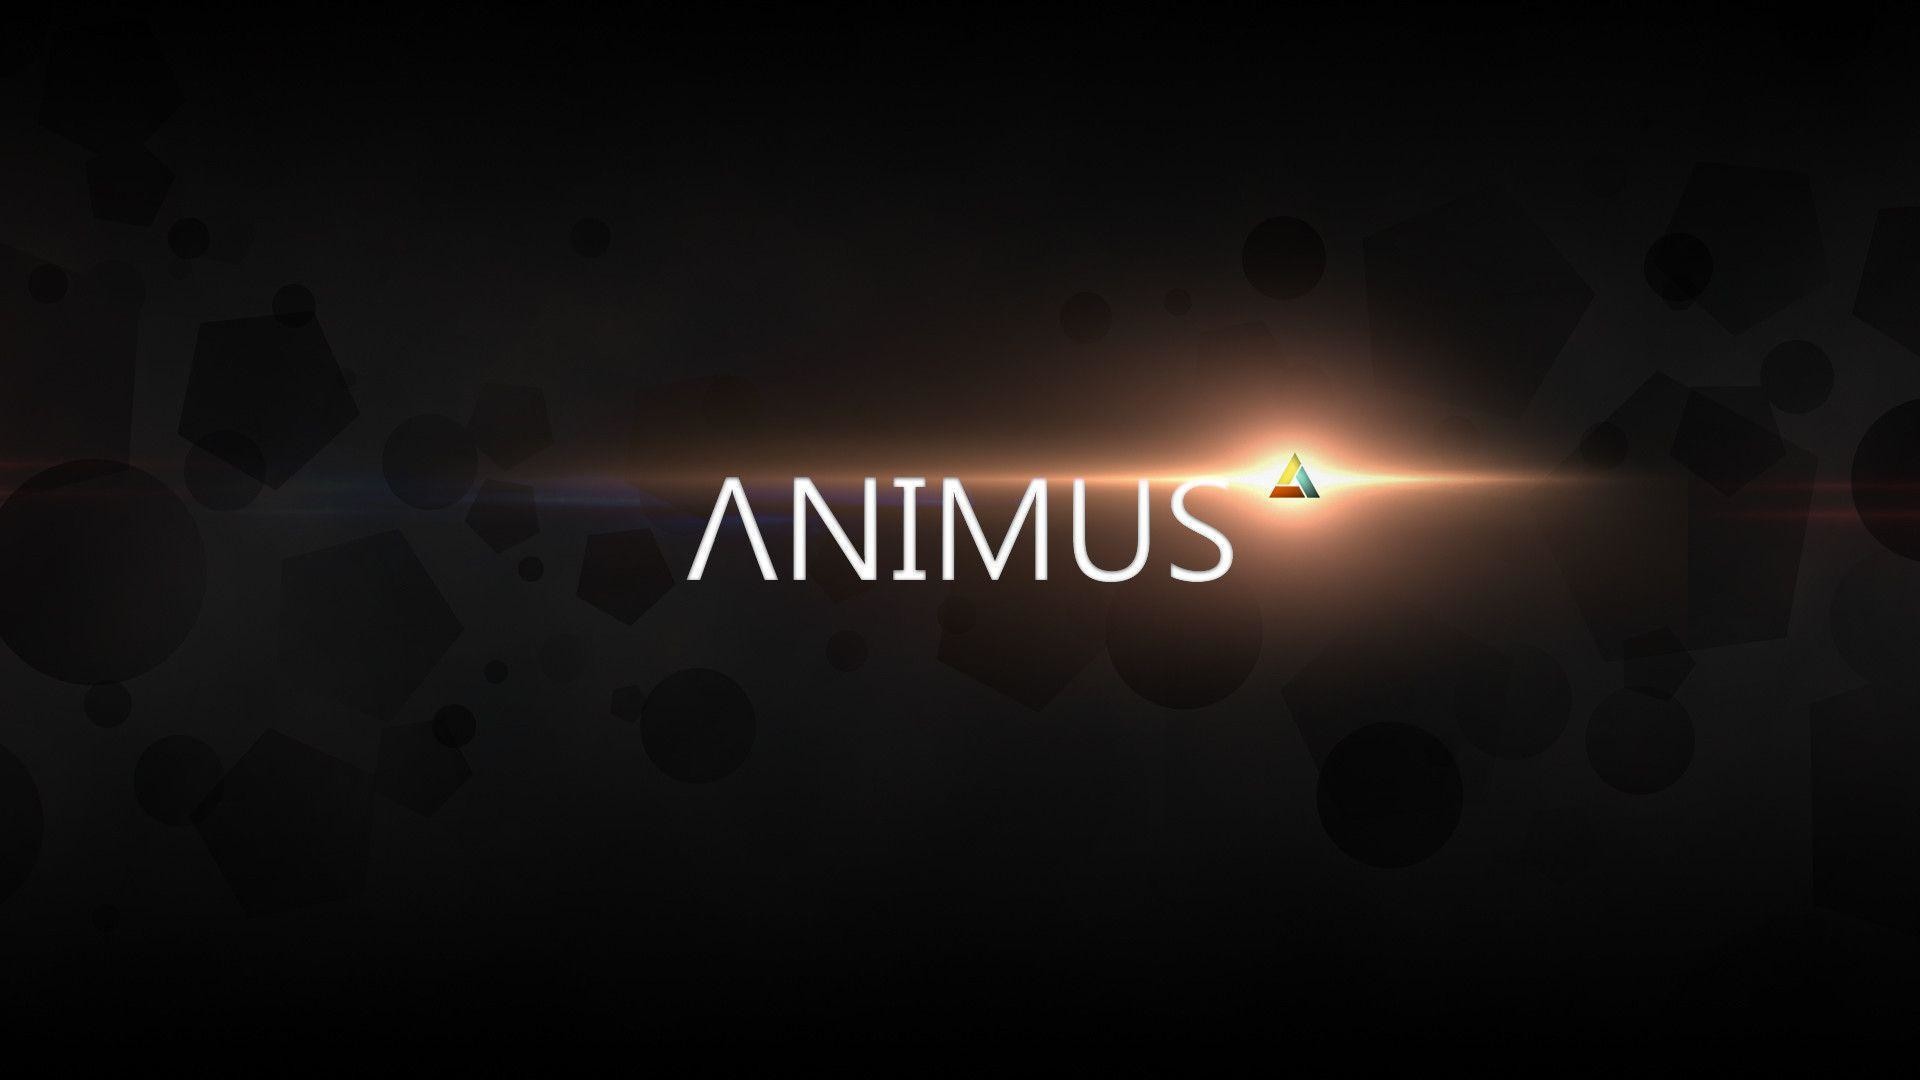 animus live wallpaper,text,licht,schriftart,himmel,dunkelheit